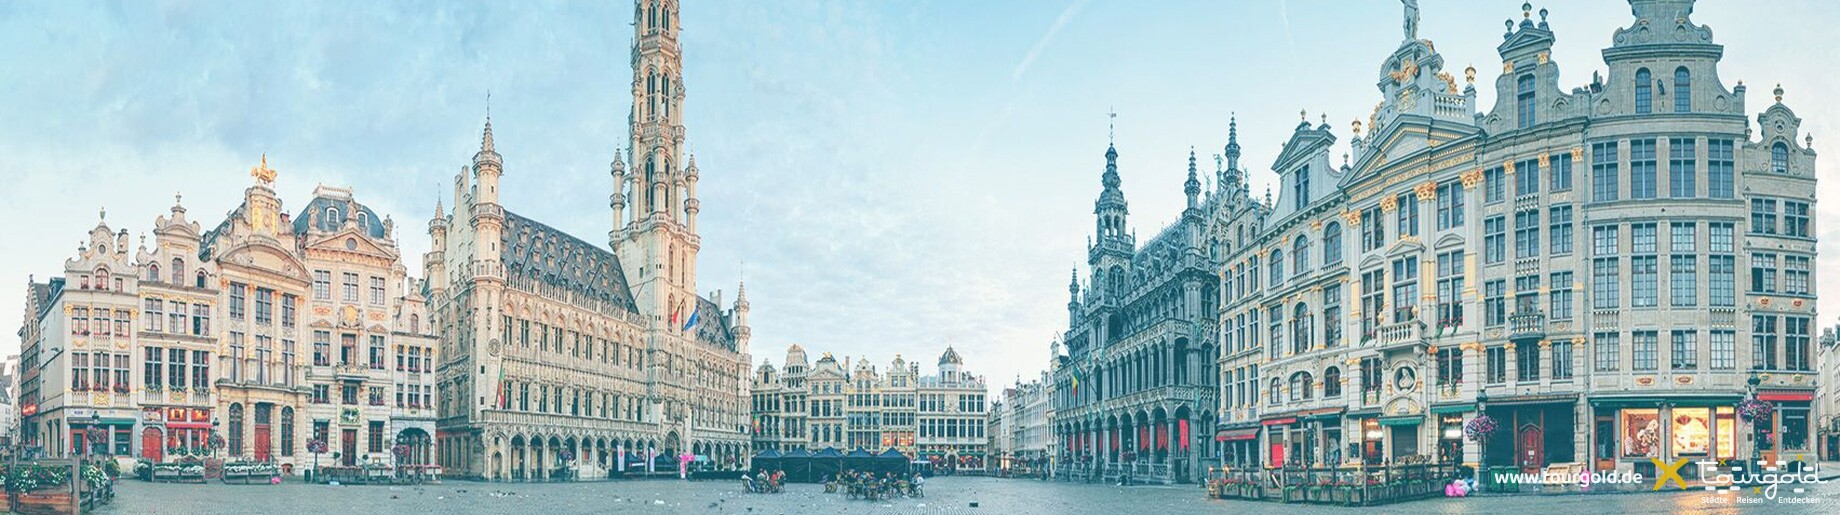 Tourgold Städtereisen Busreisen Brüssel Der Grand Place im Zentrum der Altstadt Header